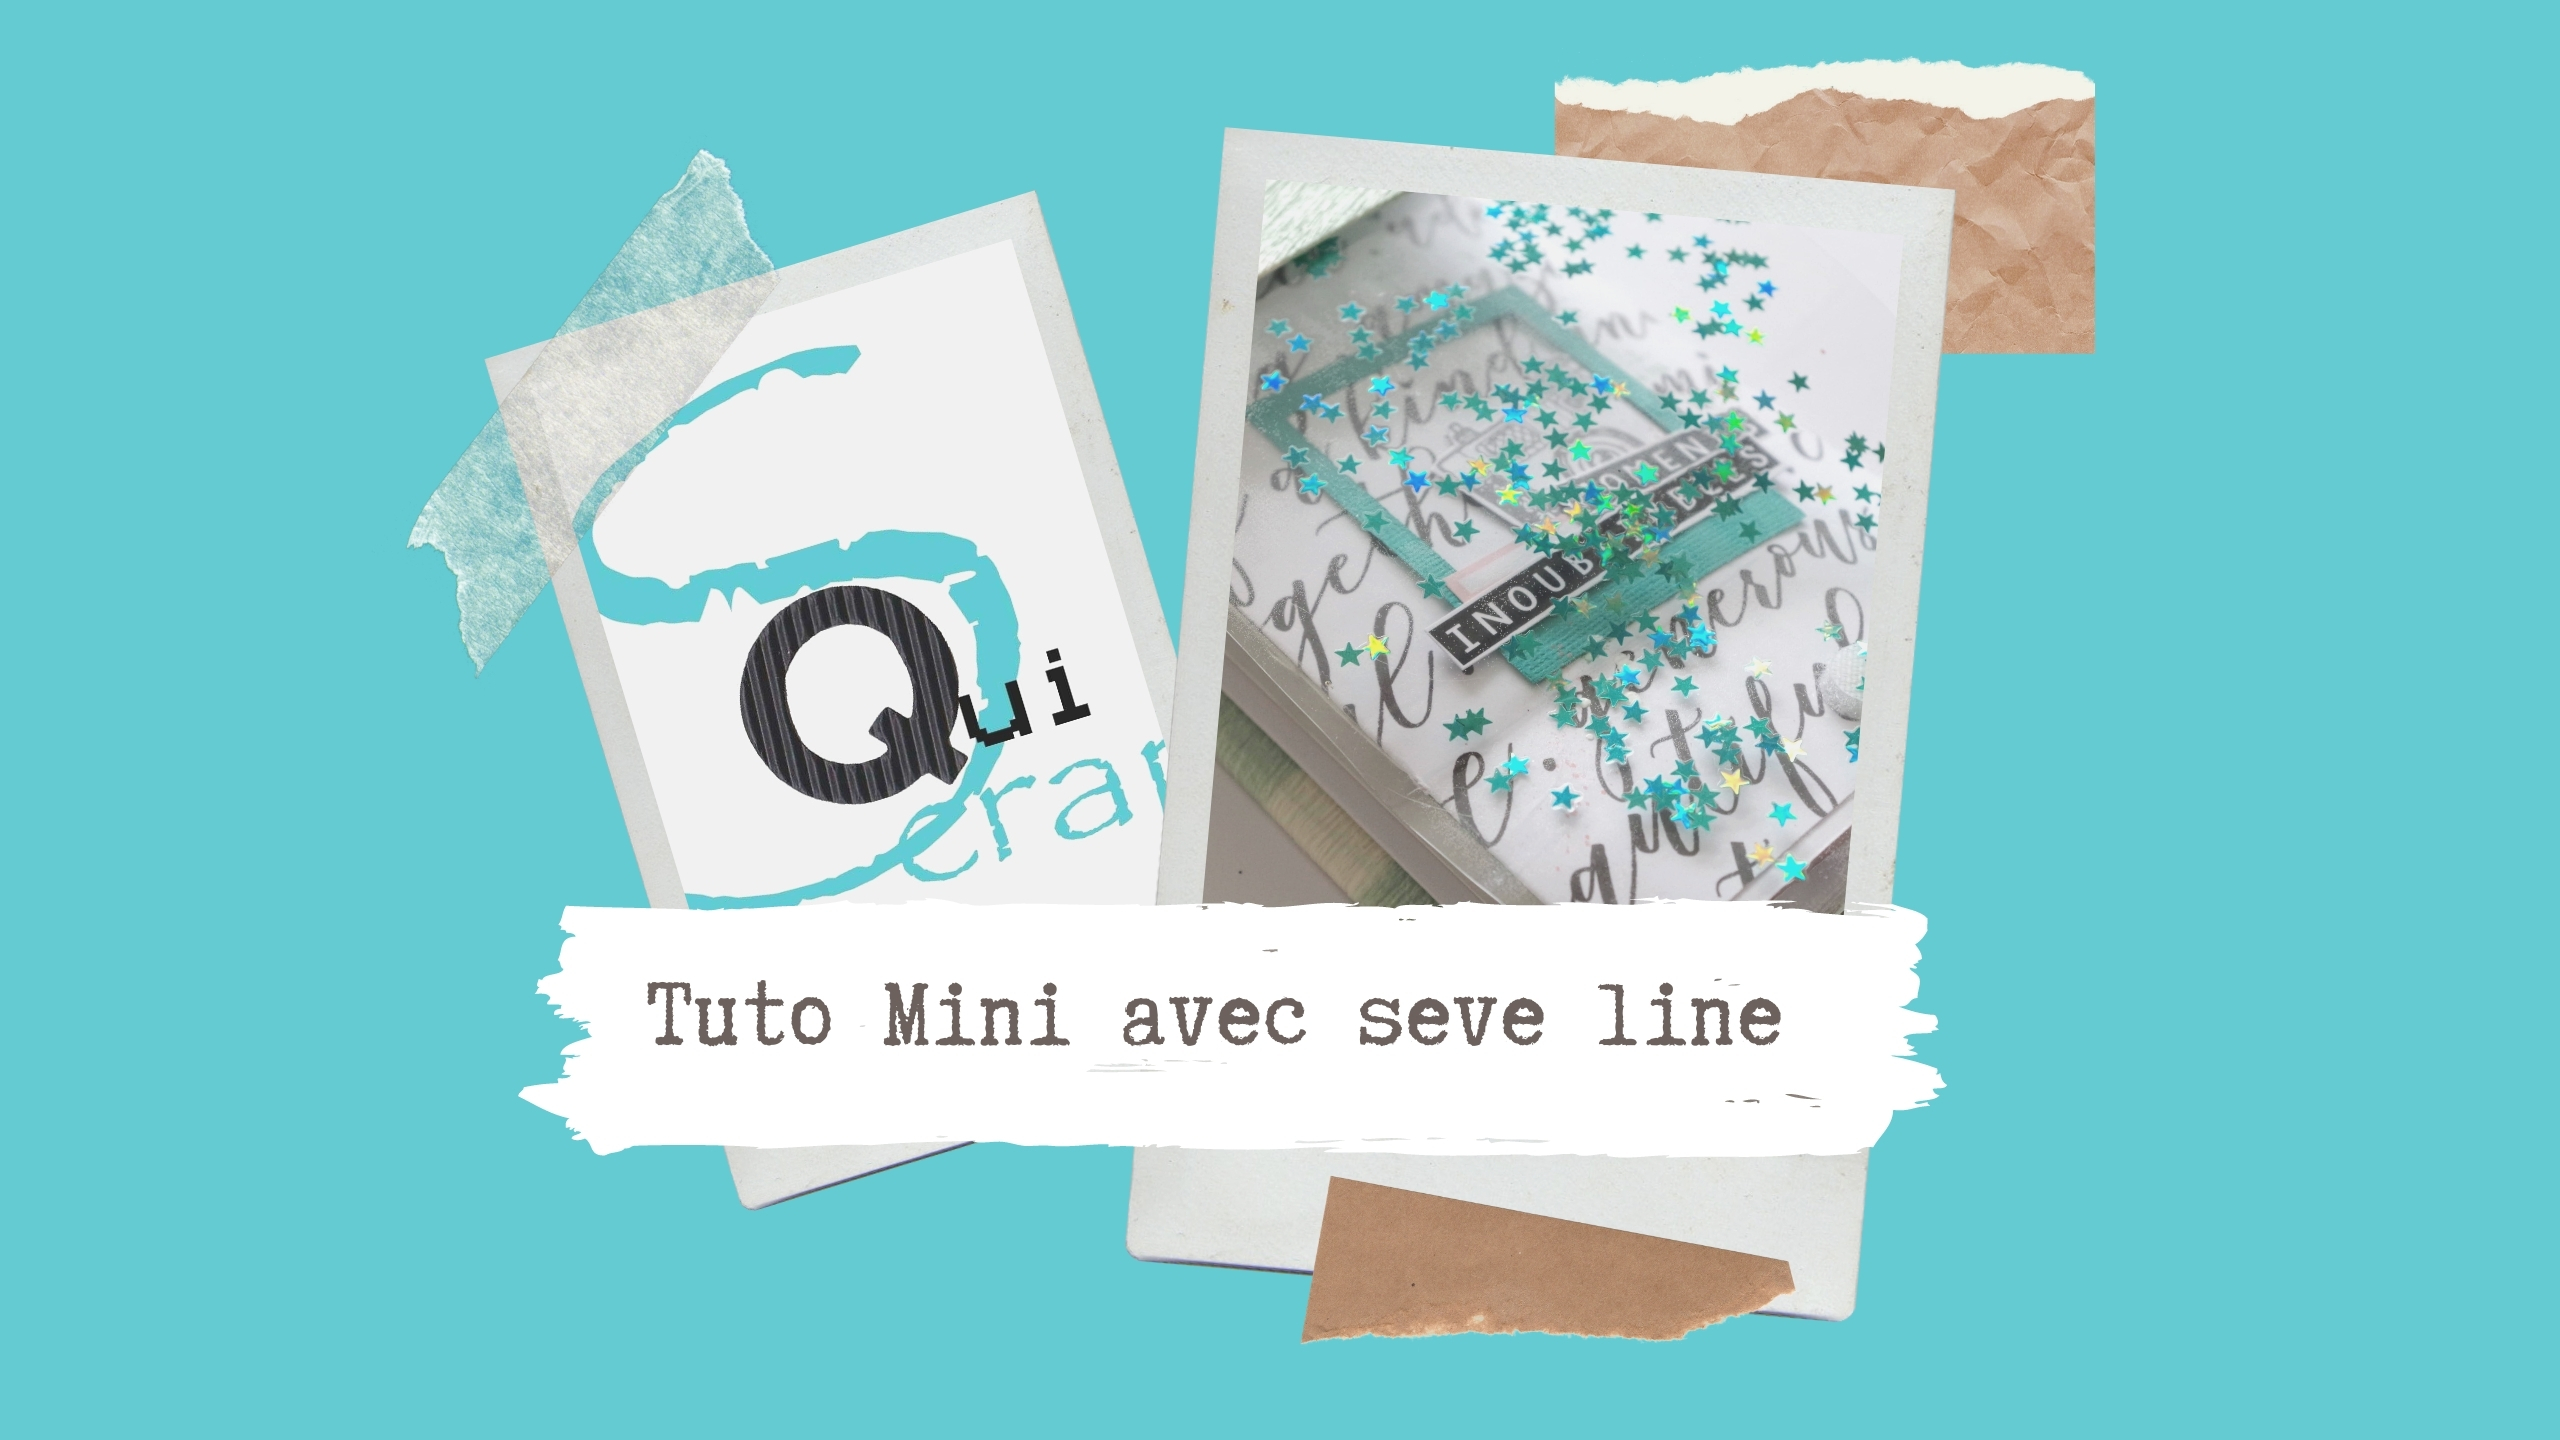 You are currently viewing Tuto n°2 pour la Box de Septembre 2020 par Seve Line: le mini-album